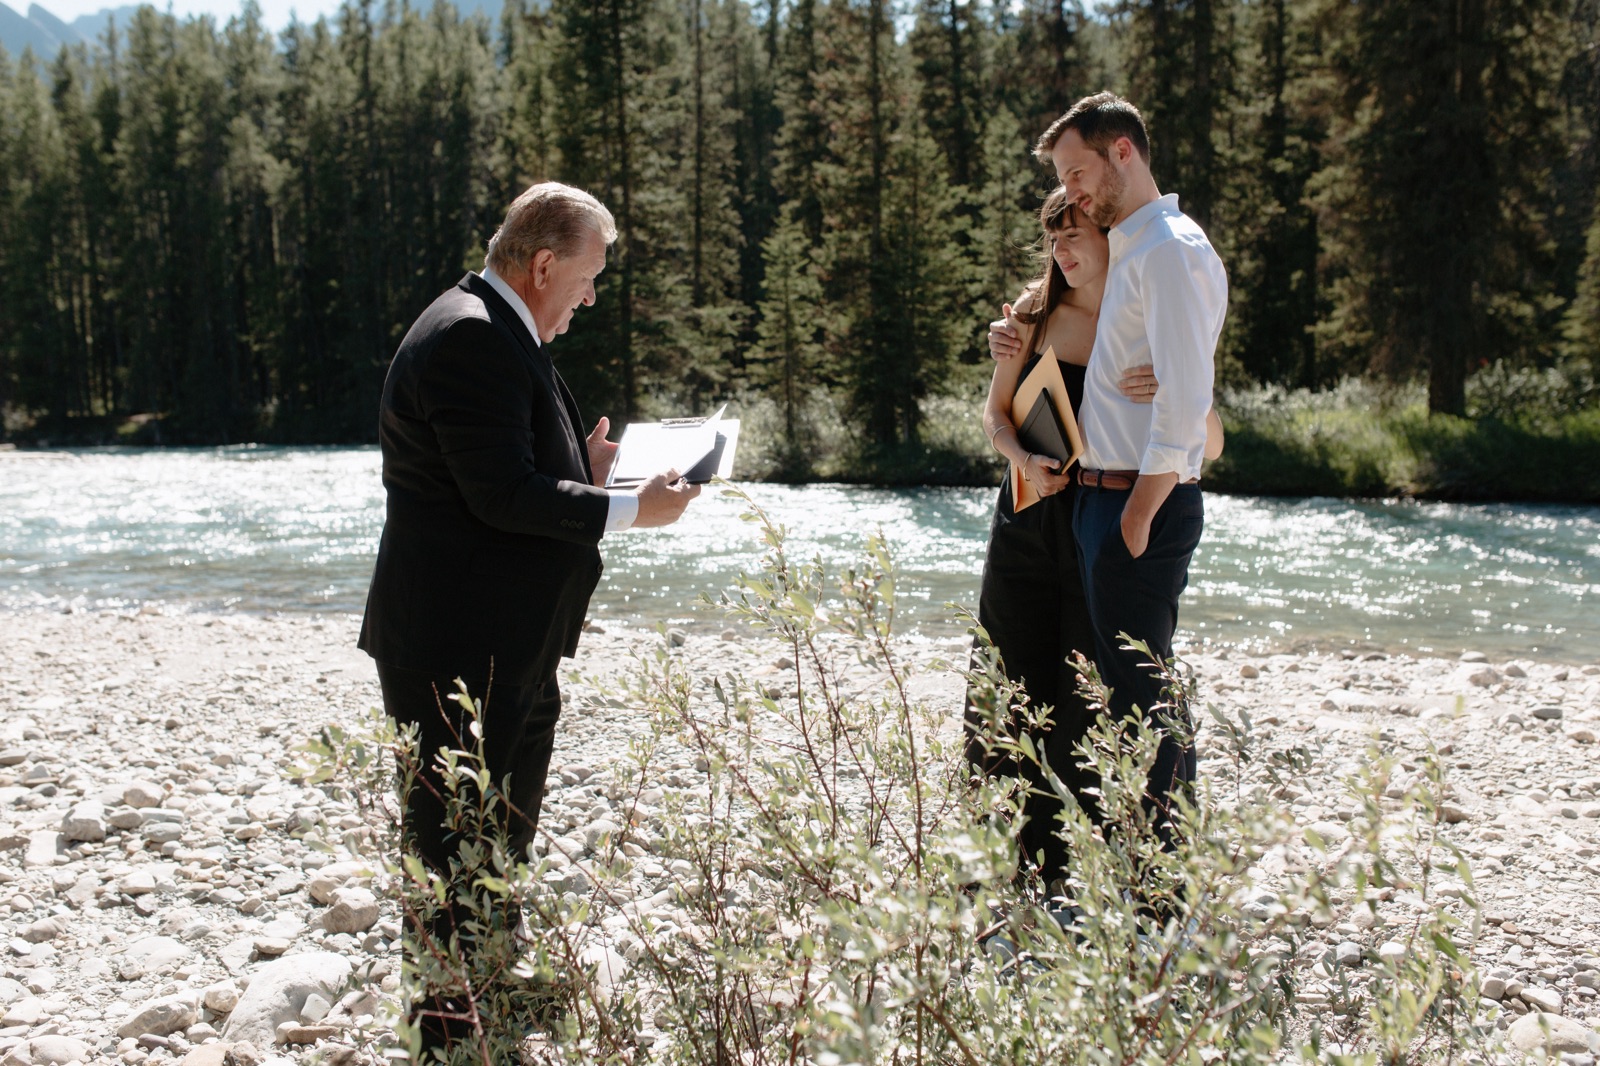 John Stutz officiating an informal elopement along the Bow River in Banff National Park